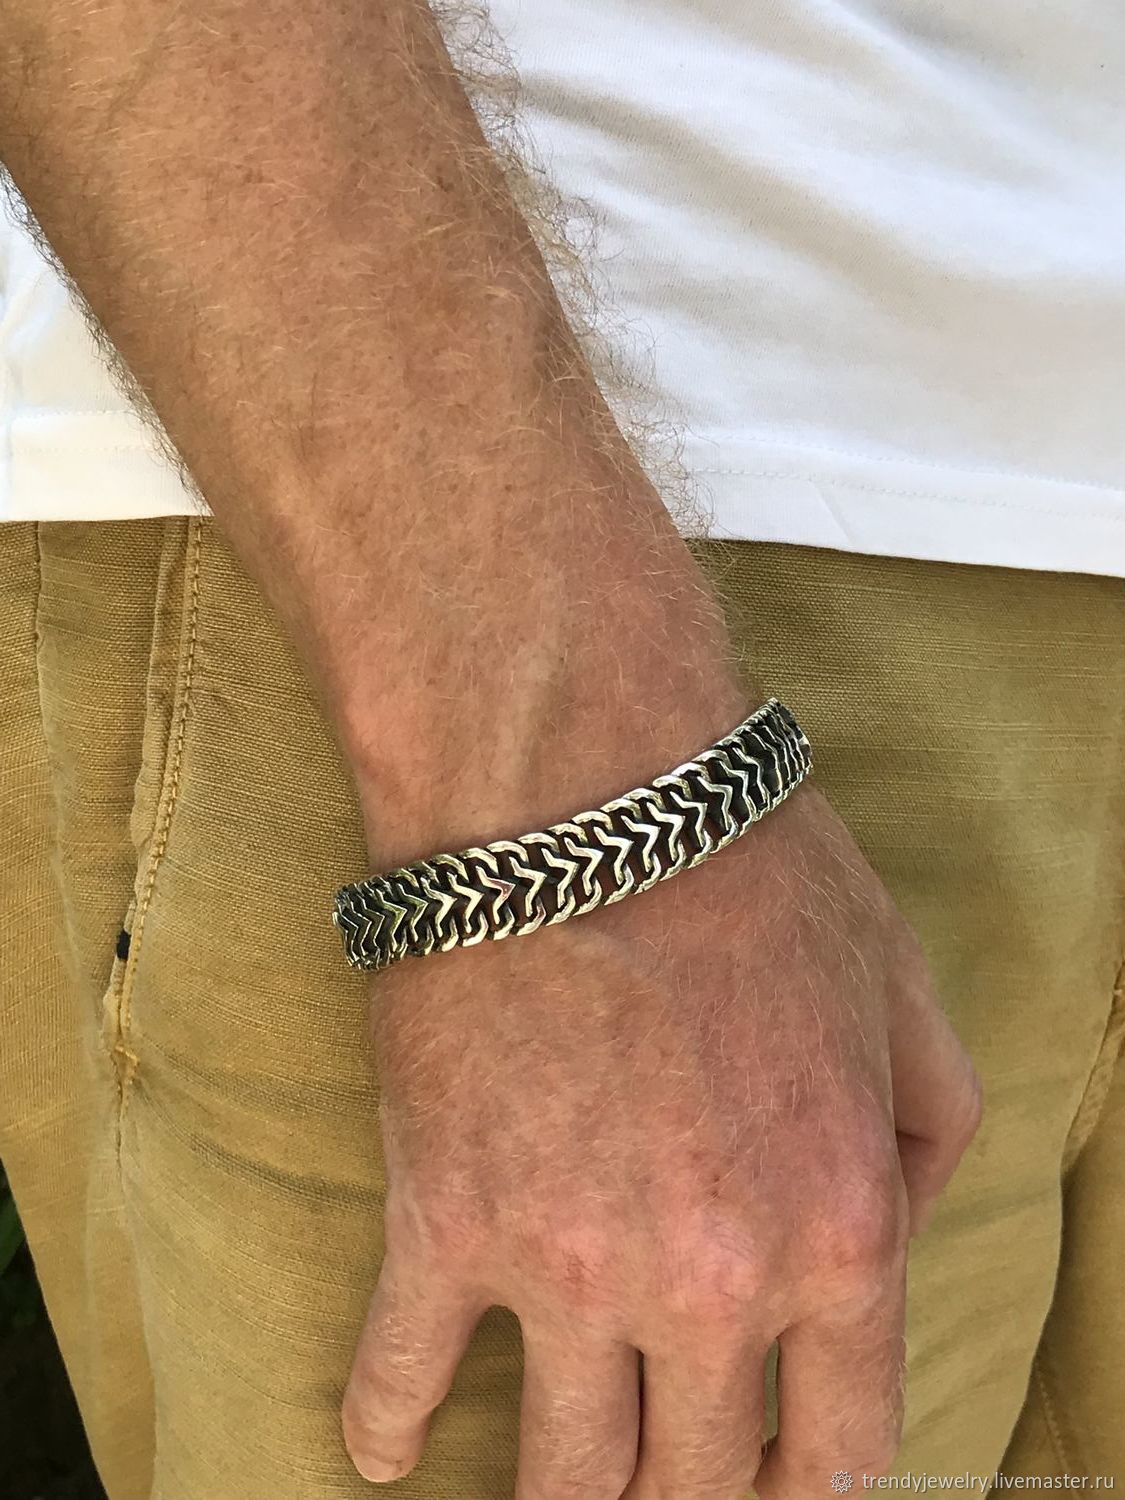 Плетения мужских браслетов на руке